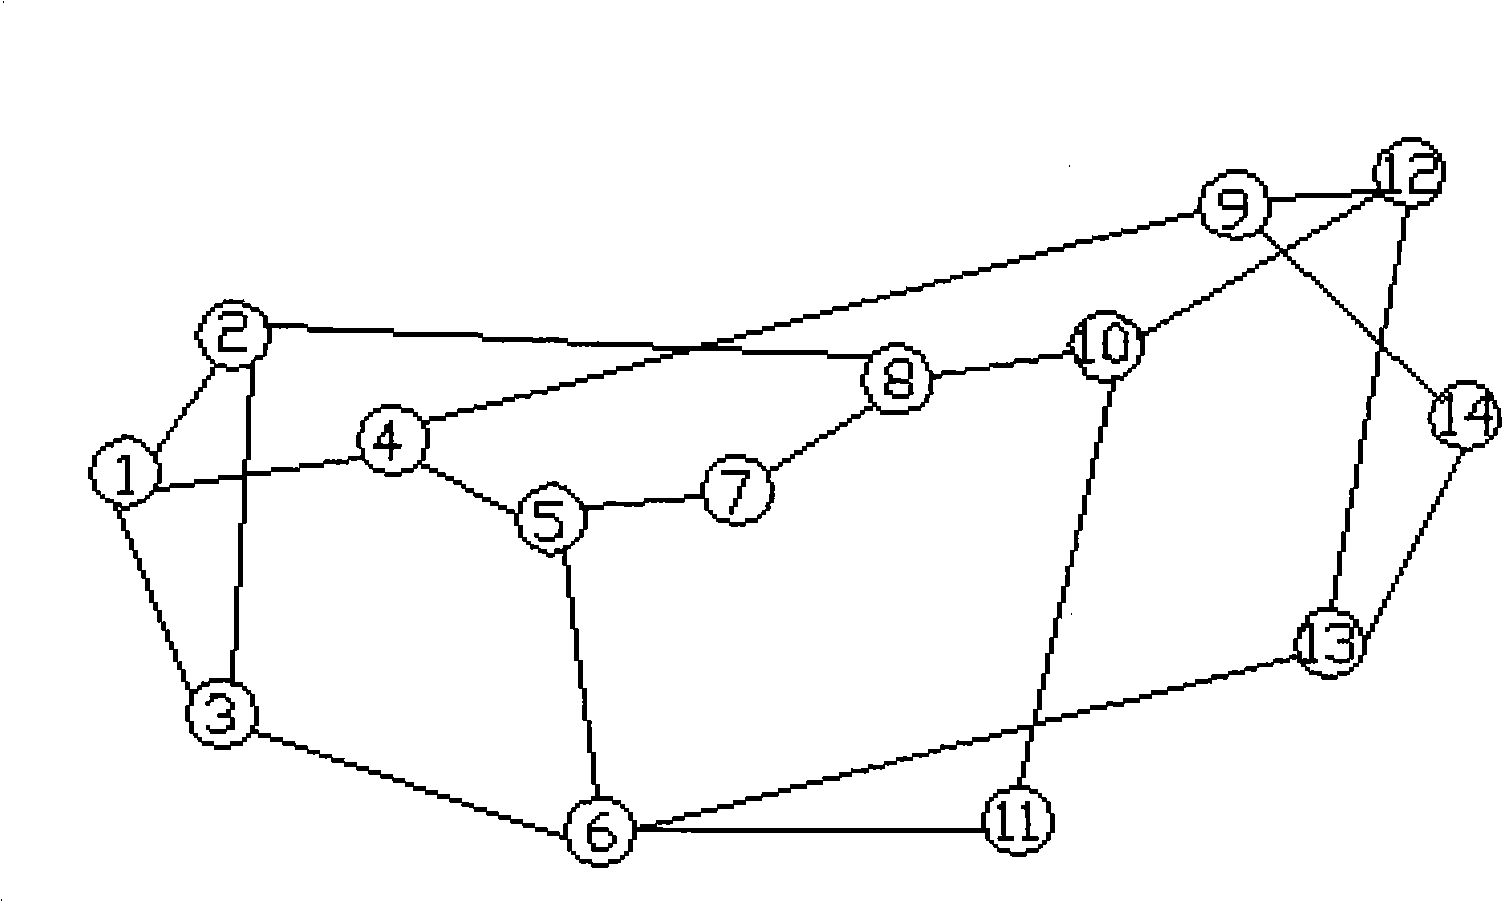 Optimum path selection method of communication network based on load balance